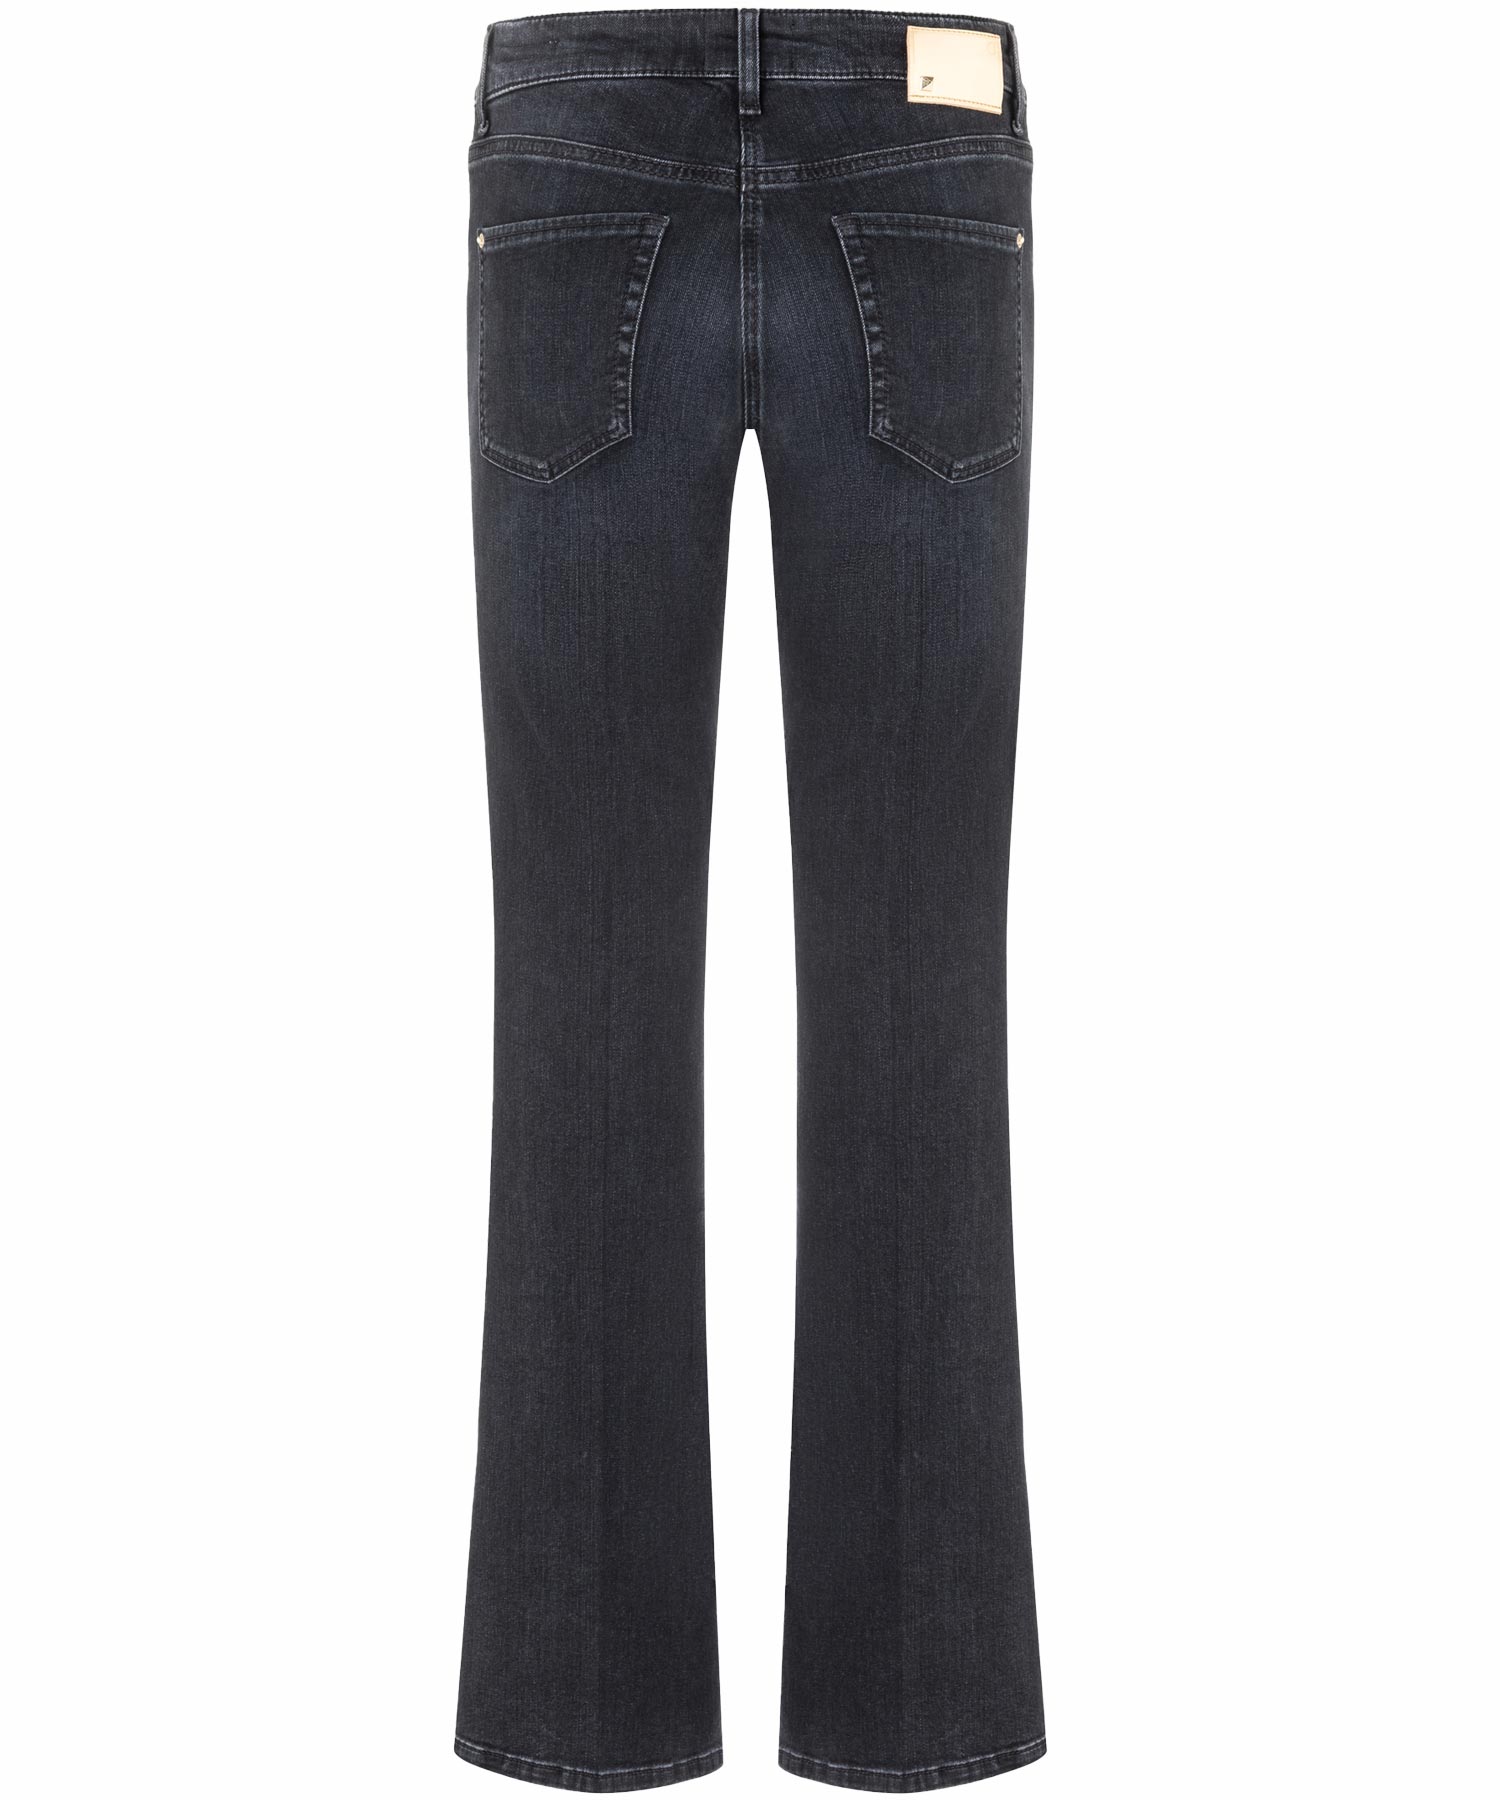 Cambio Jeans Paris flared in modern dark denim